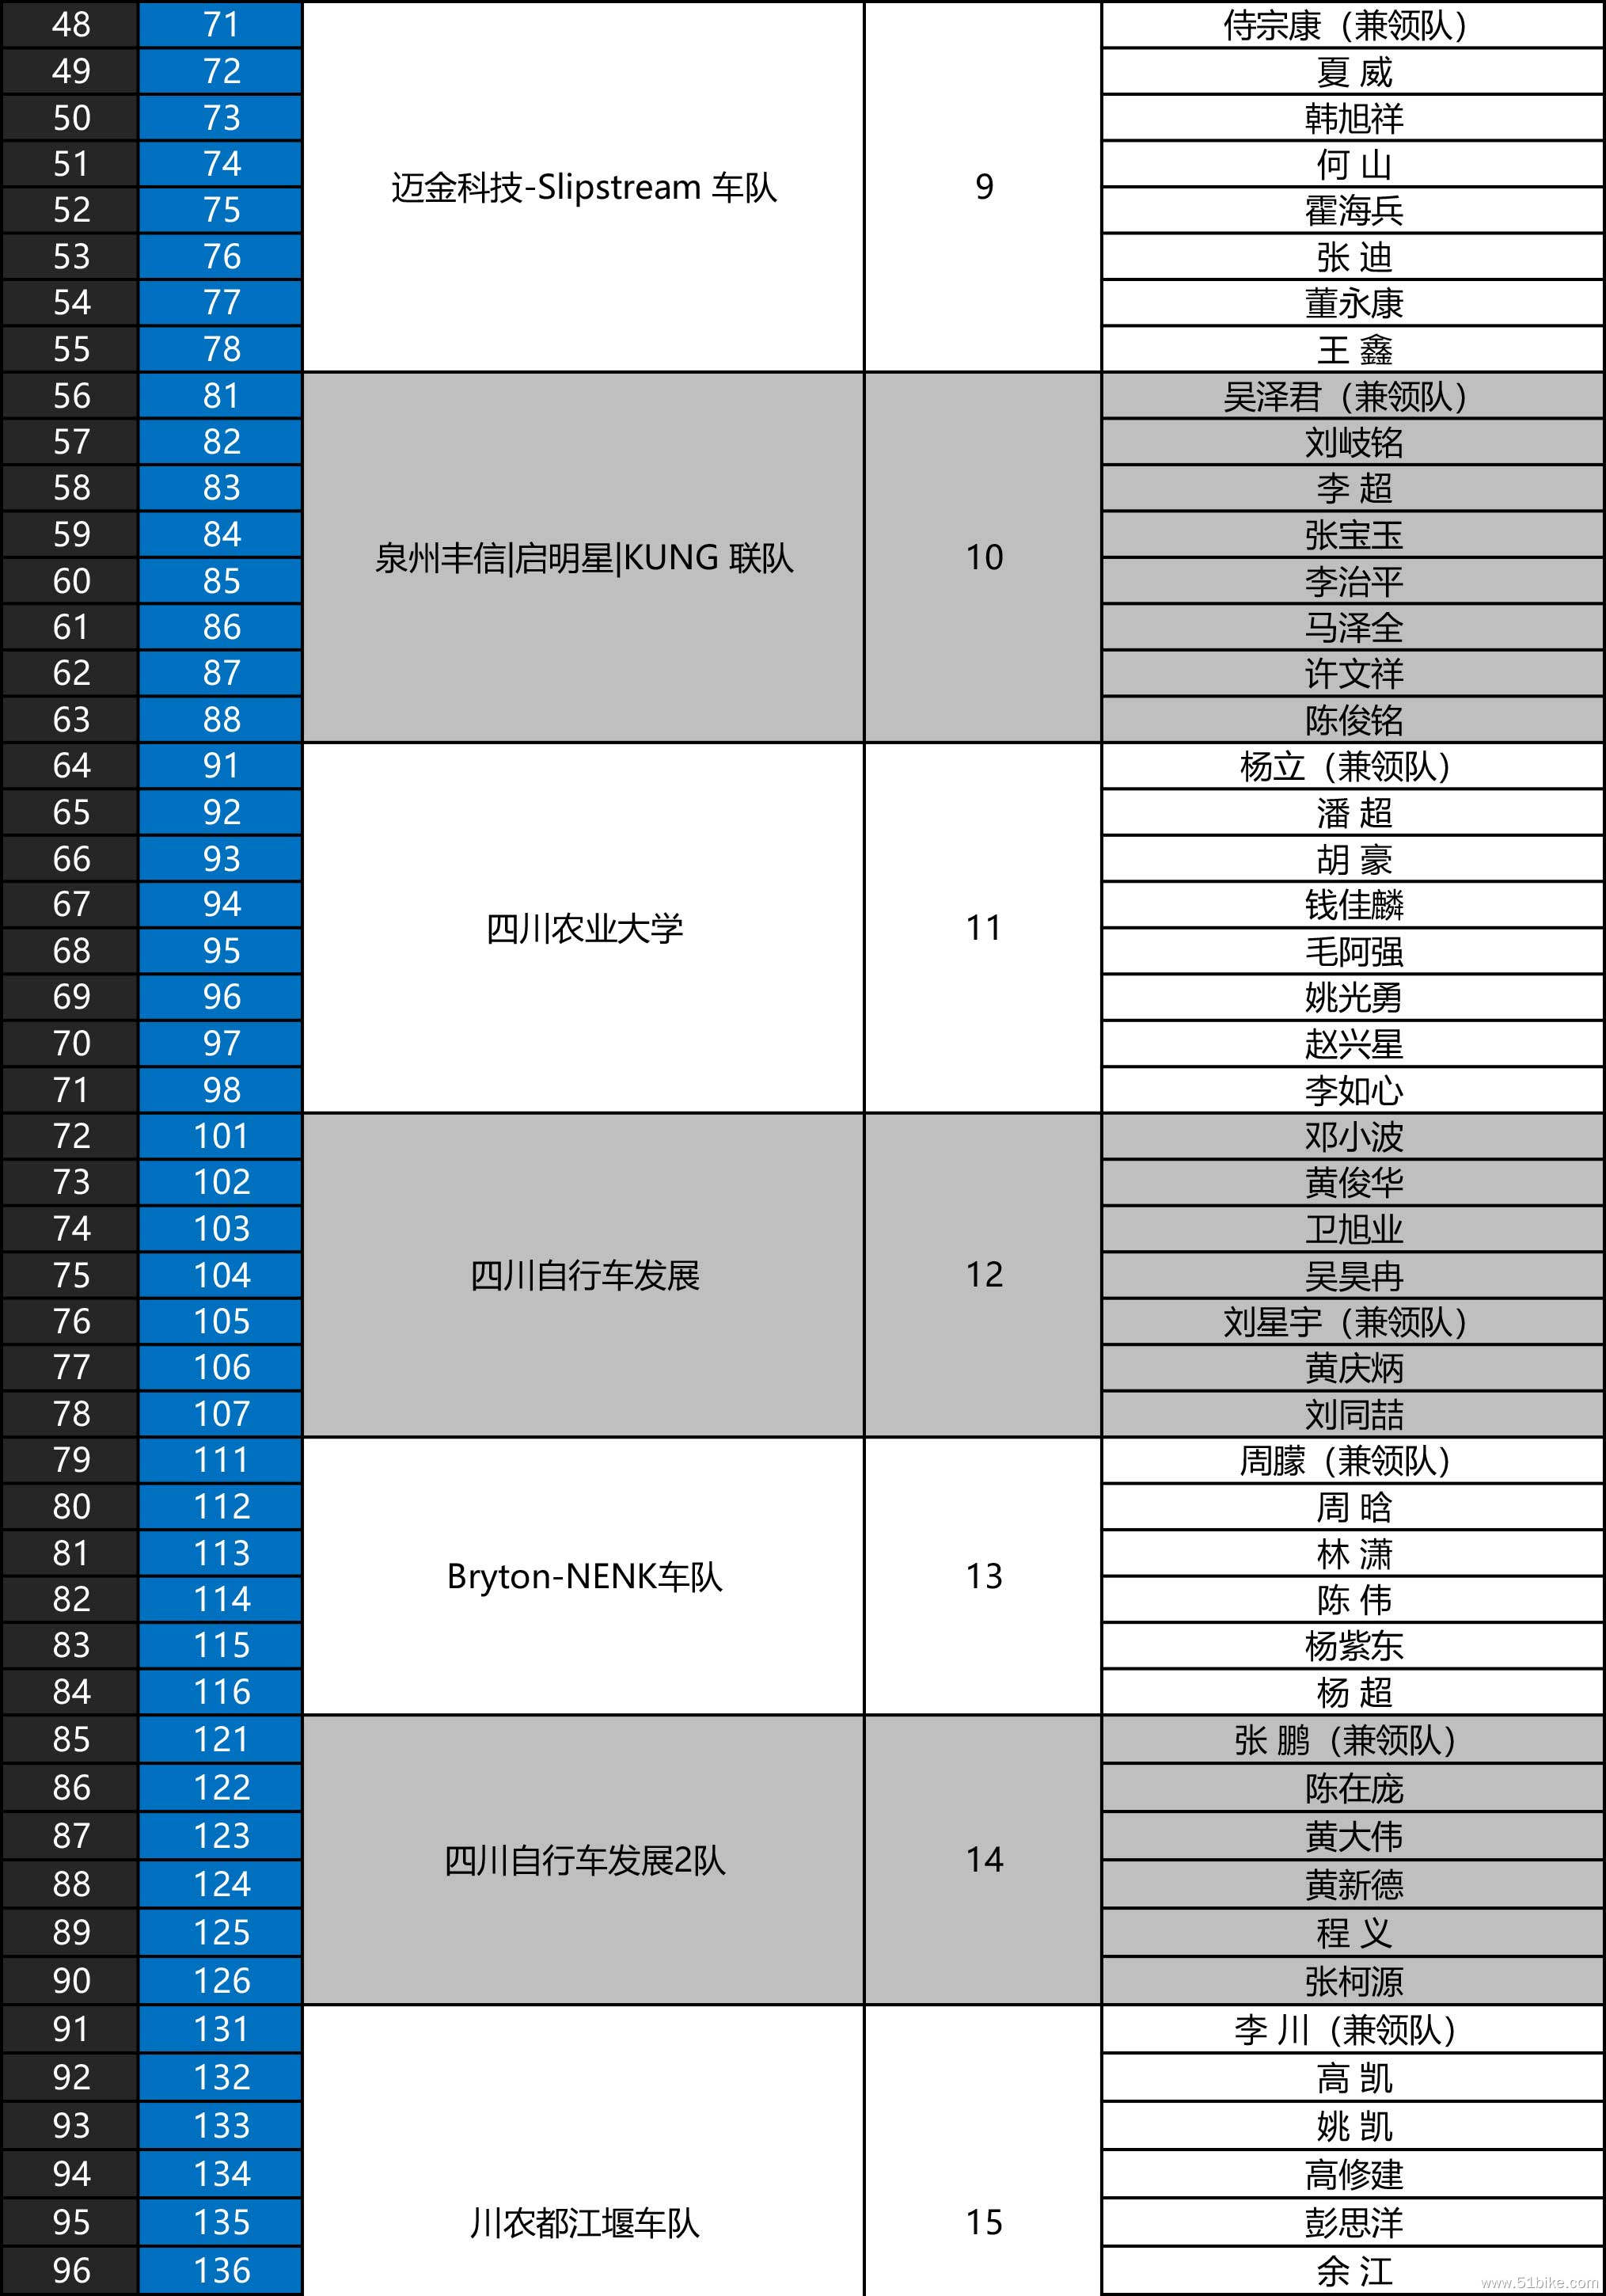 2022环雅安自行车赛运动员名单-主持人信息-2.jpg